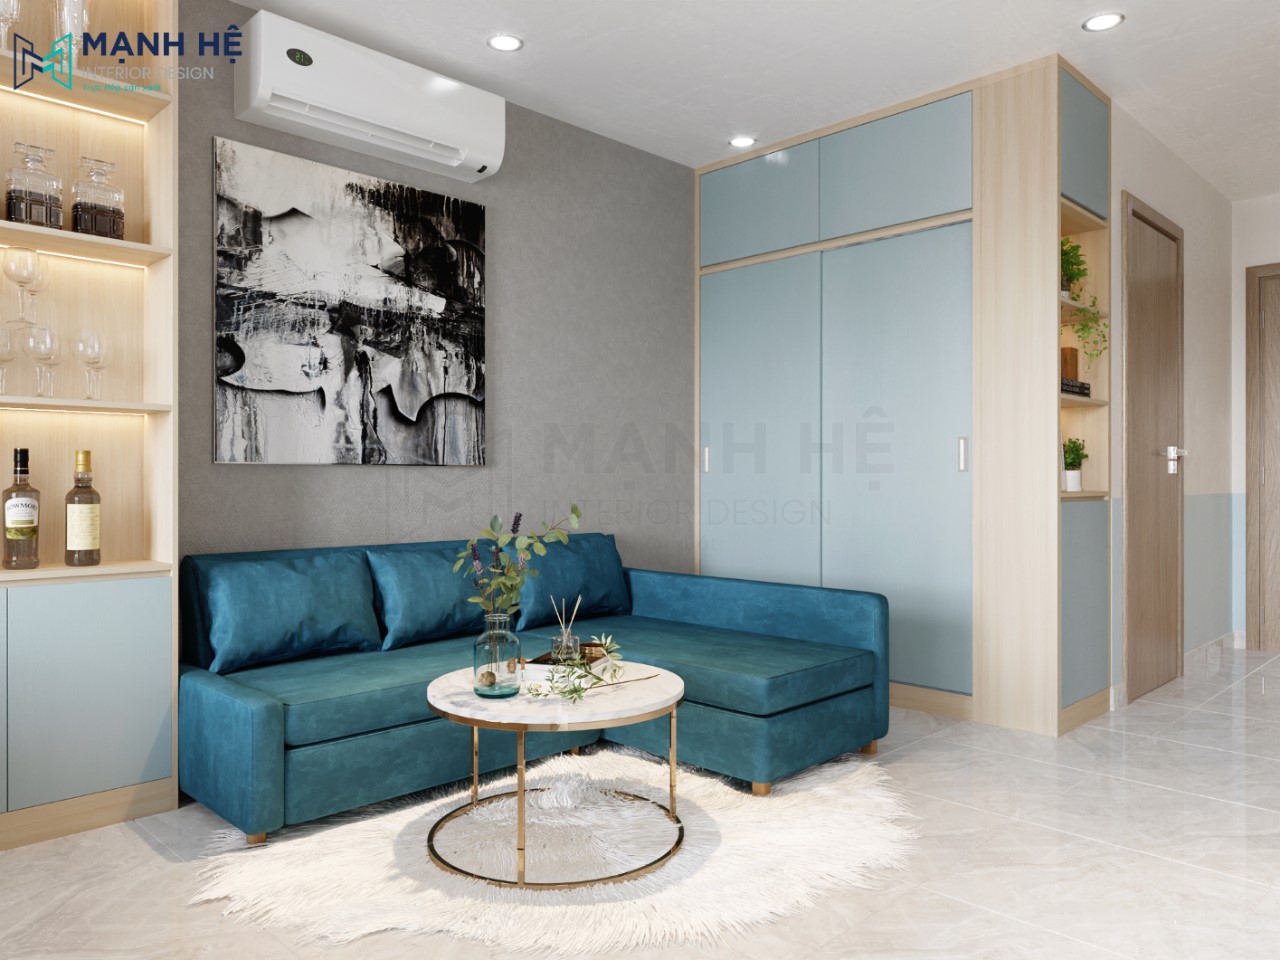 Lựa chọn gam màu xanh năng động cho không gian căn hộ studio thêm thoáng đãng và rộng mở